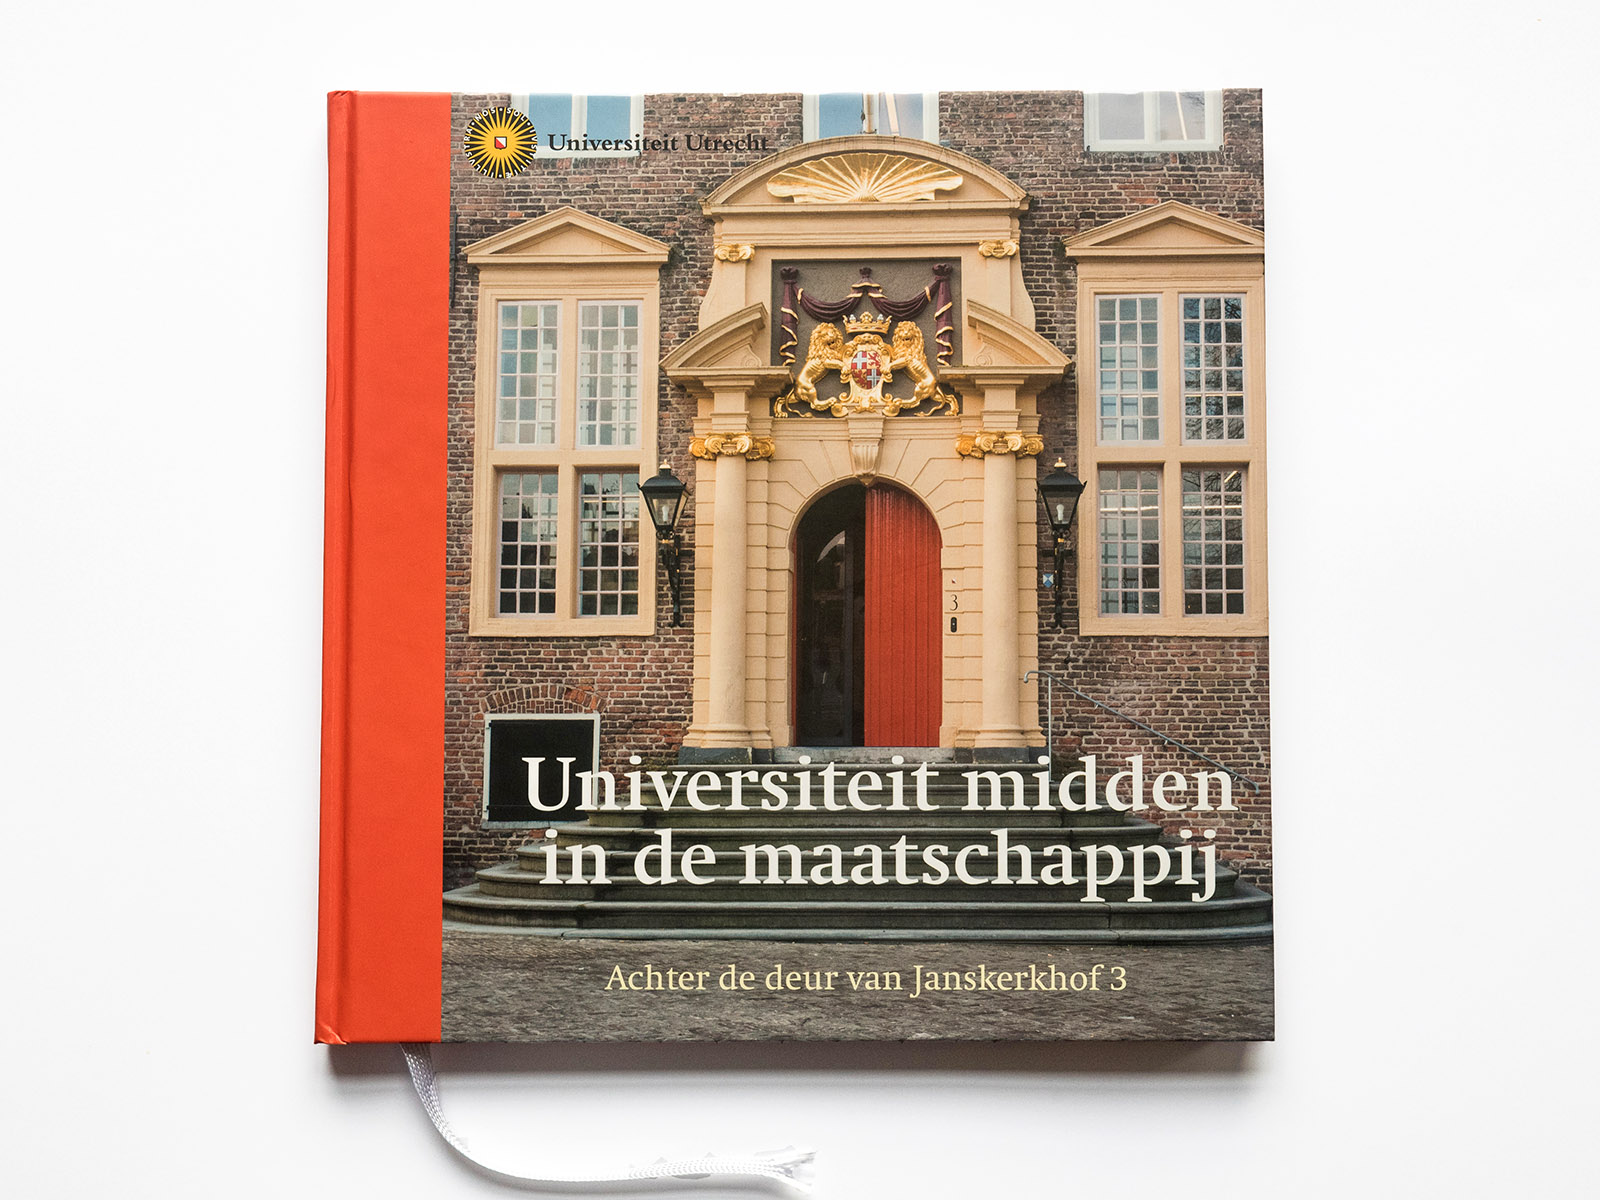 Book for Utrecht University